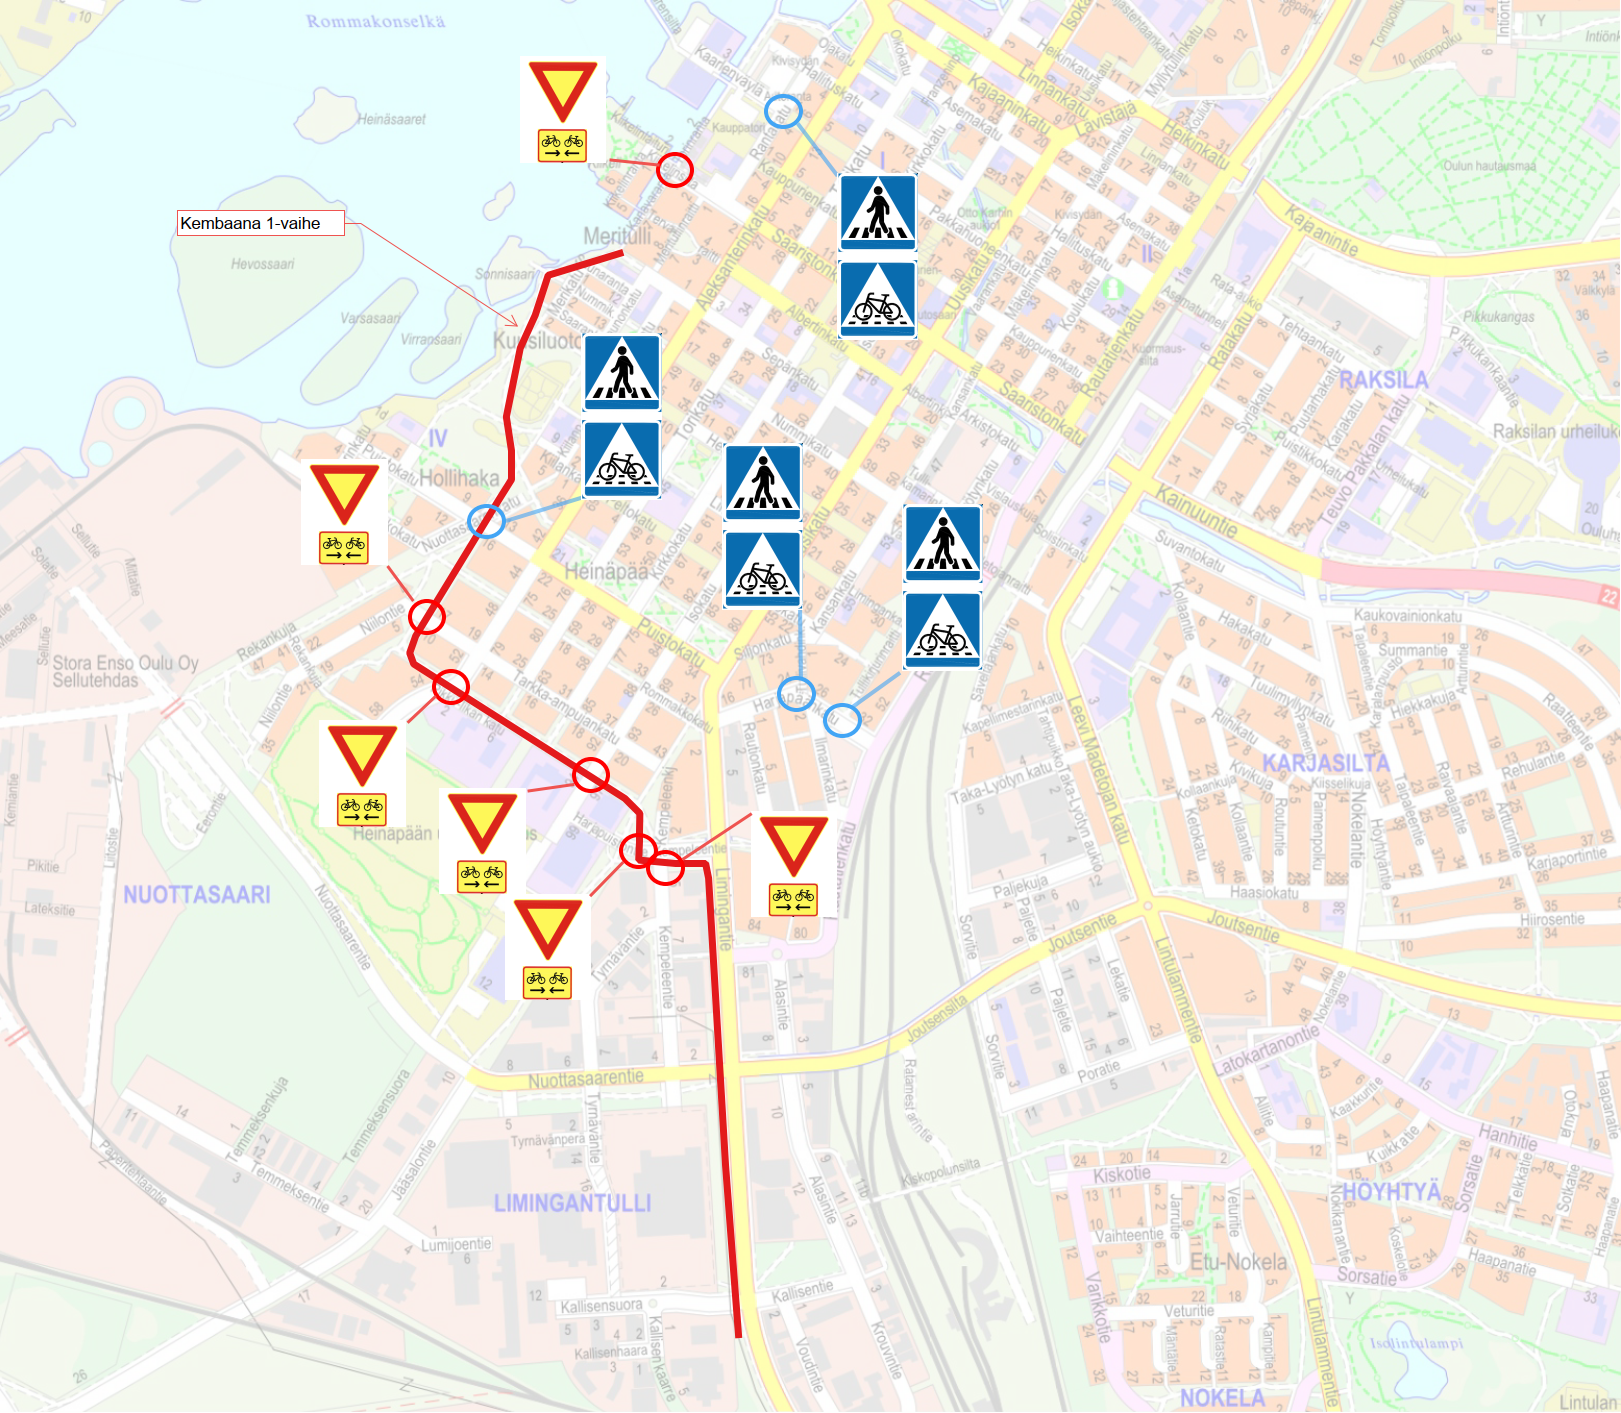 Karttakuva Oulun kaupungin keskustasta, johon on merkitty uusia väistämisvelvollisuusmuutoksia.